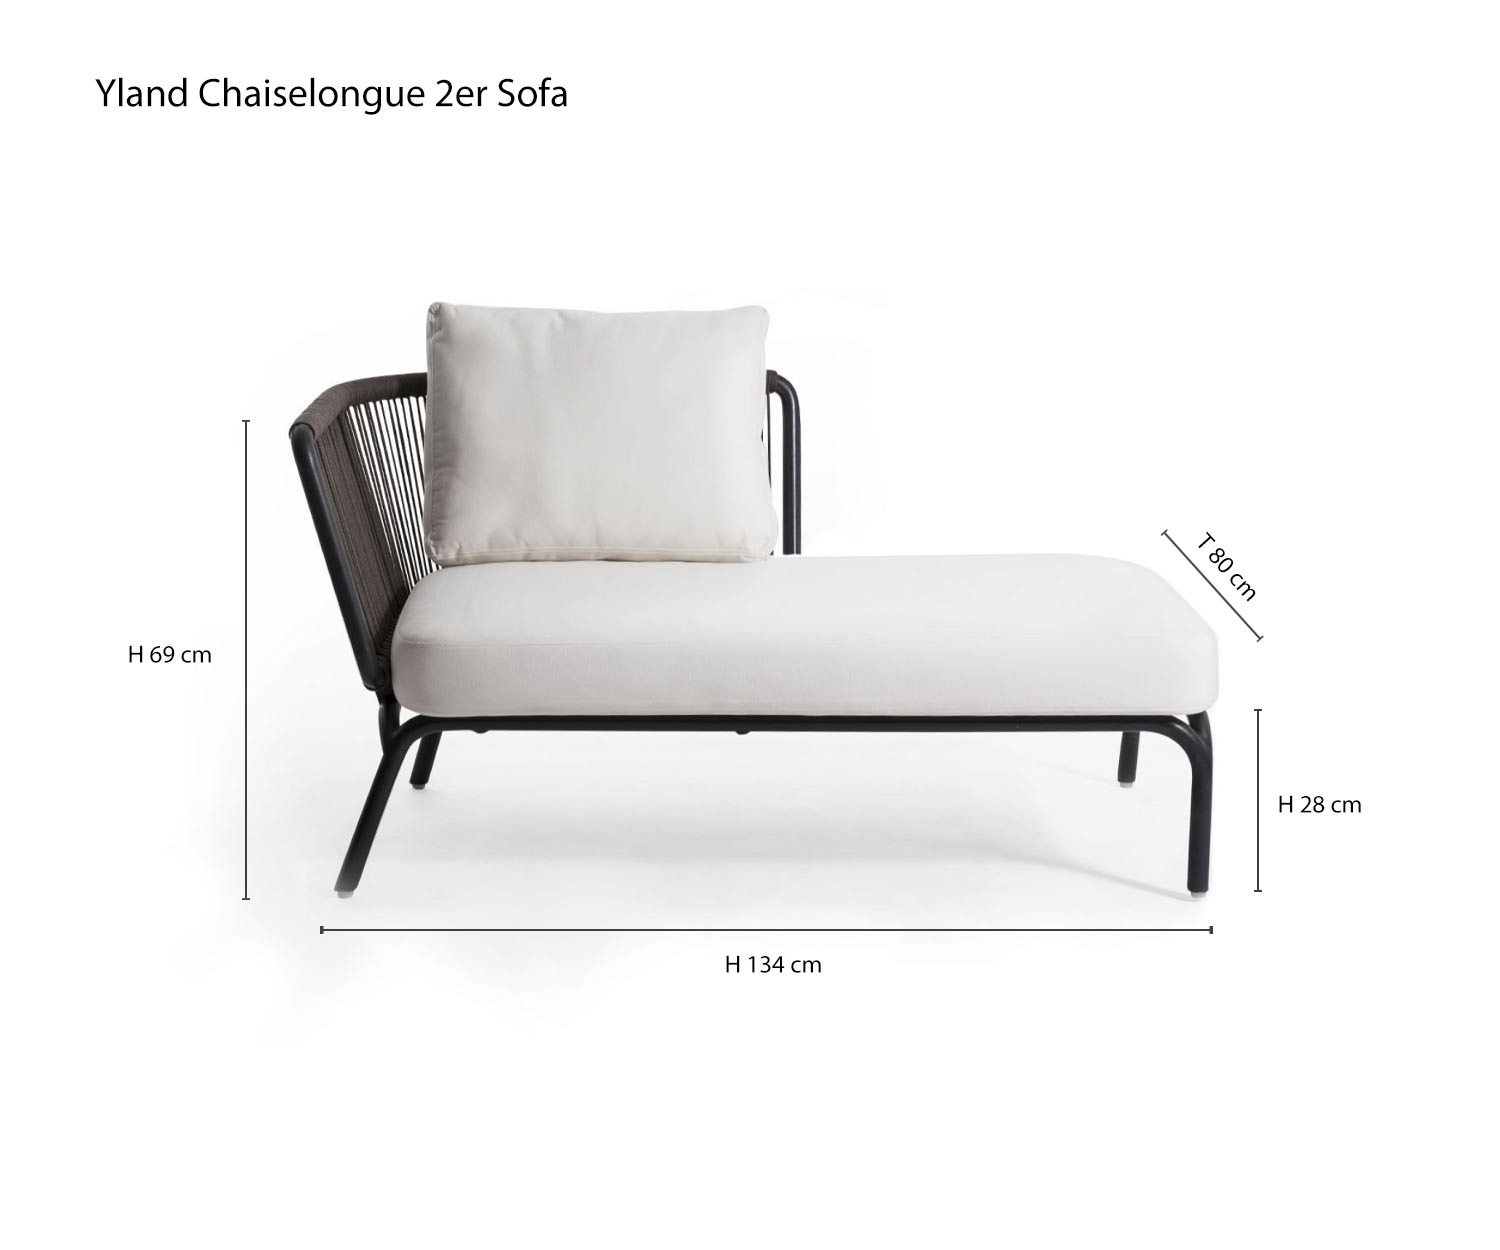 Chaise longue Divano di design a 2 posti Yland da Oasiq Schizzo Dimensioni Dimensioni Informazioni sulle dimensioni